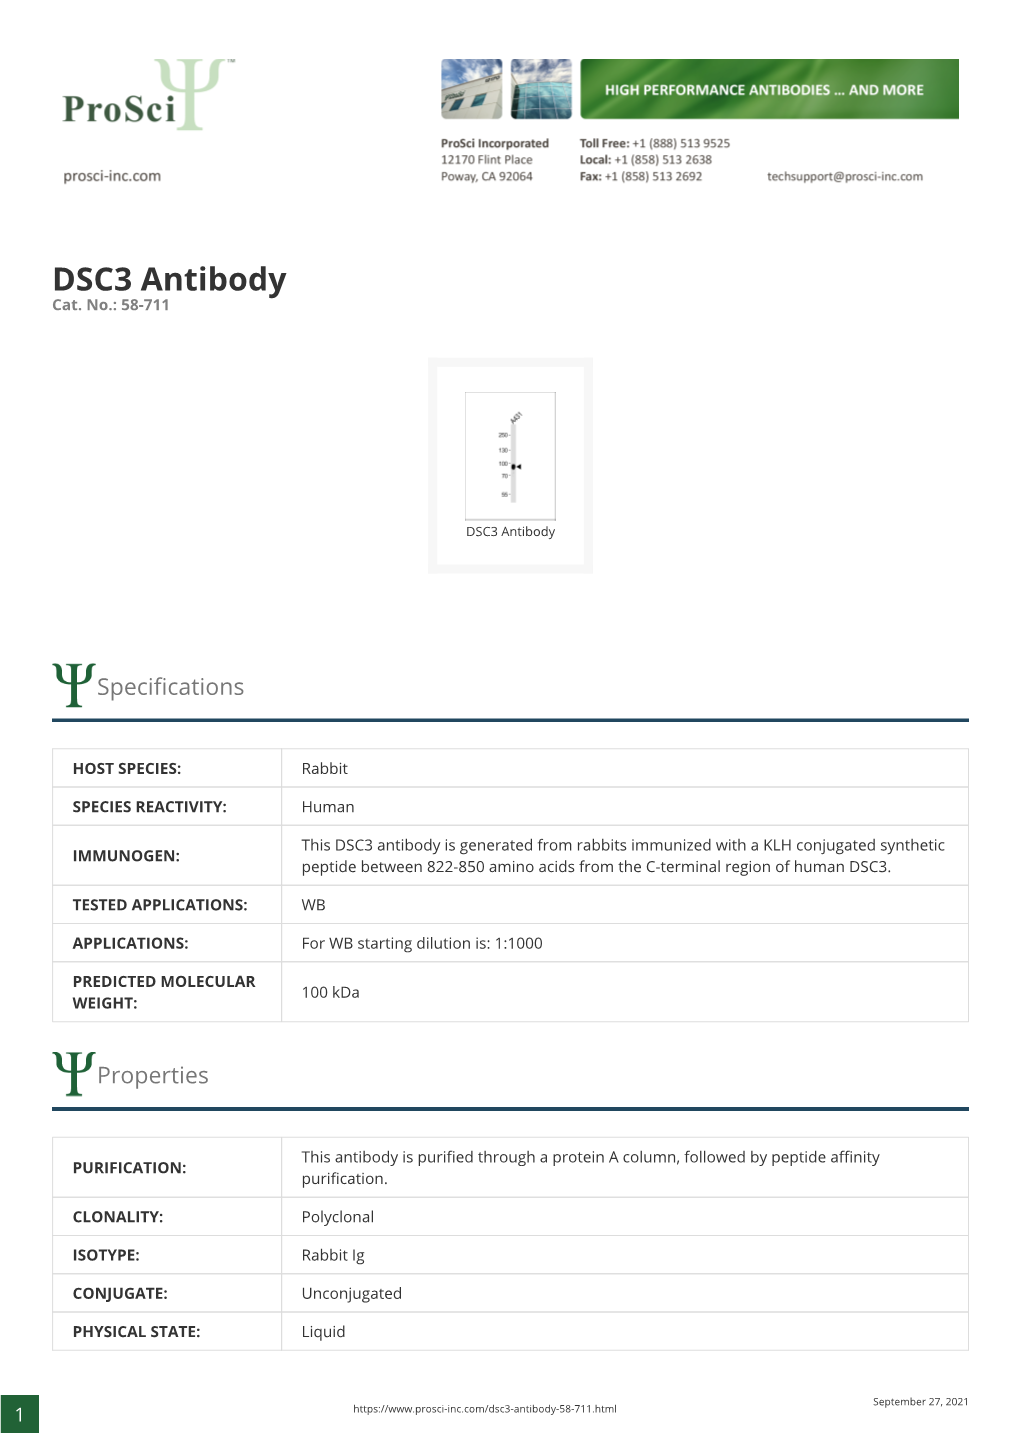 DSC3 Antibody Cat